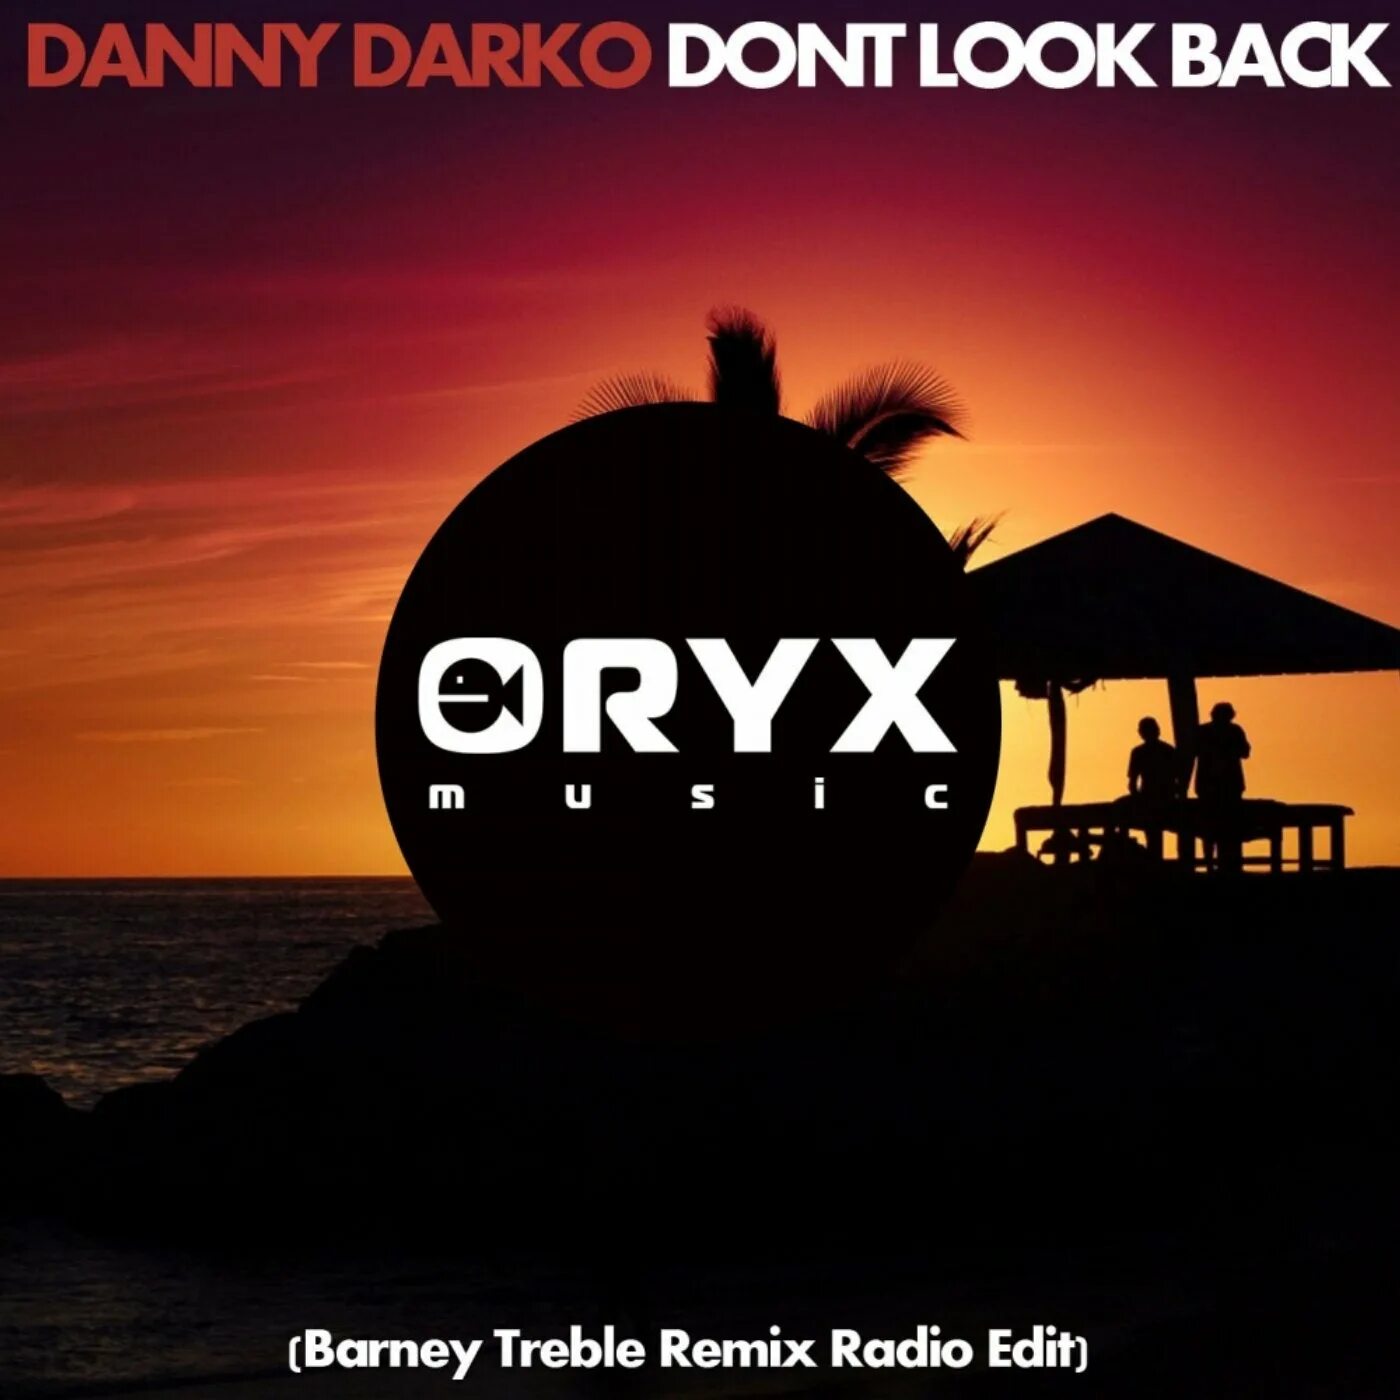 Danny Darko. Radio Edit. Danny Darko feat. Jova Radevska - Butterfly (Invold Remix). Картинка London view Radio Edit. Песня back remix